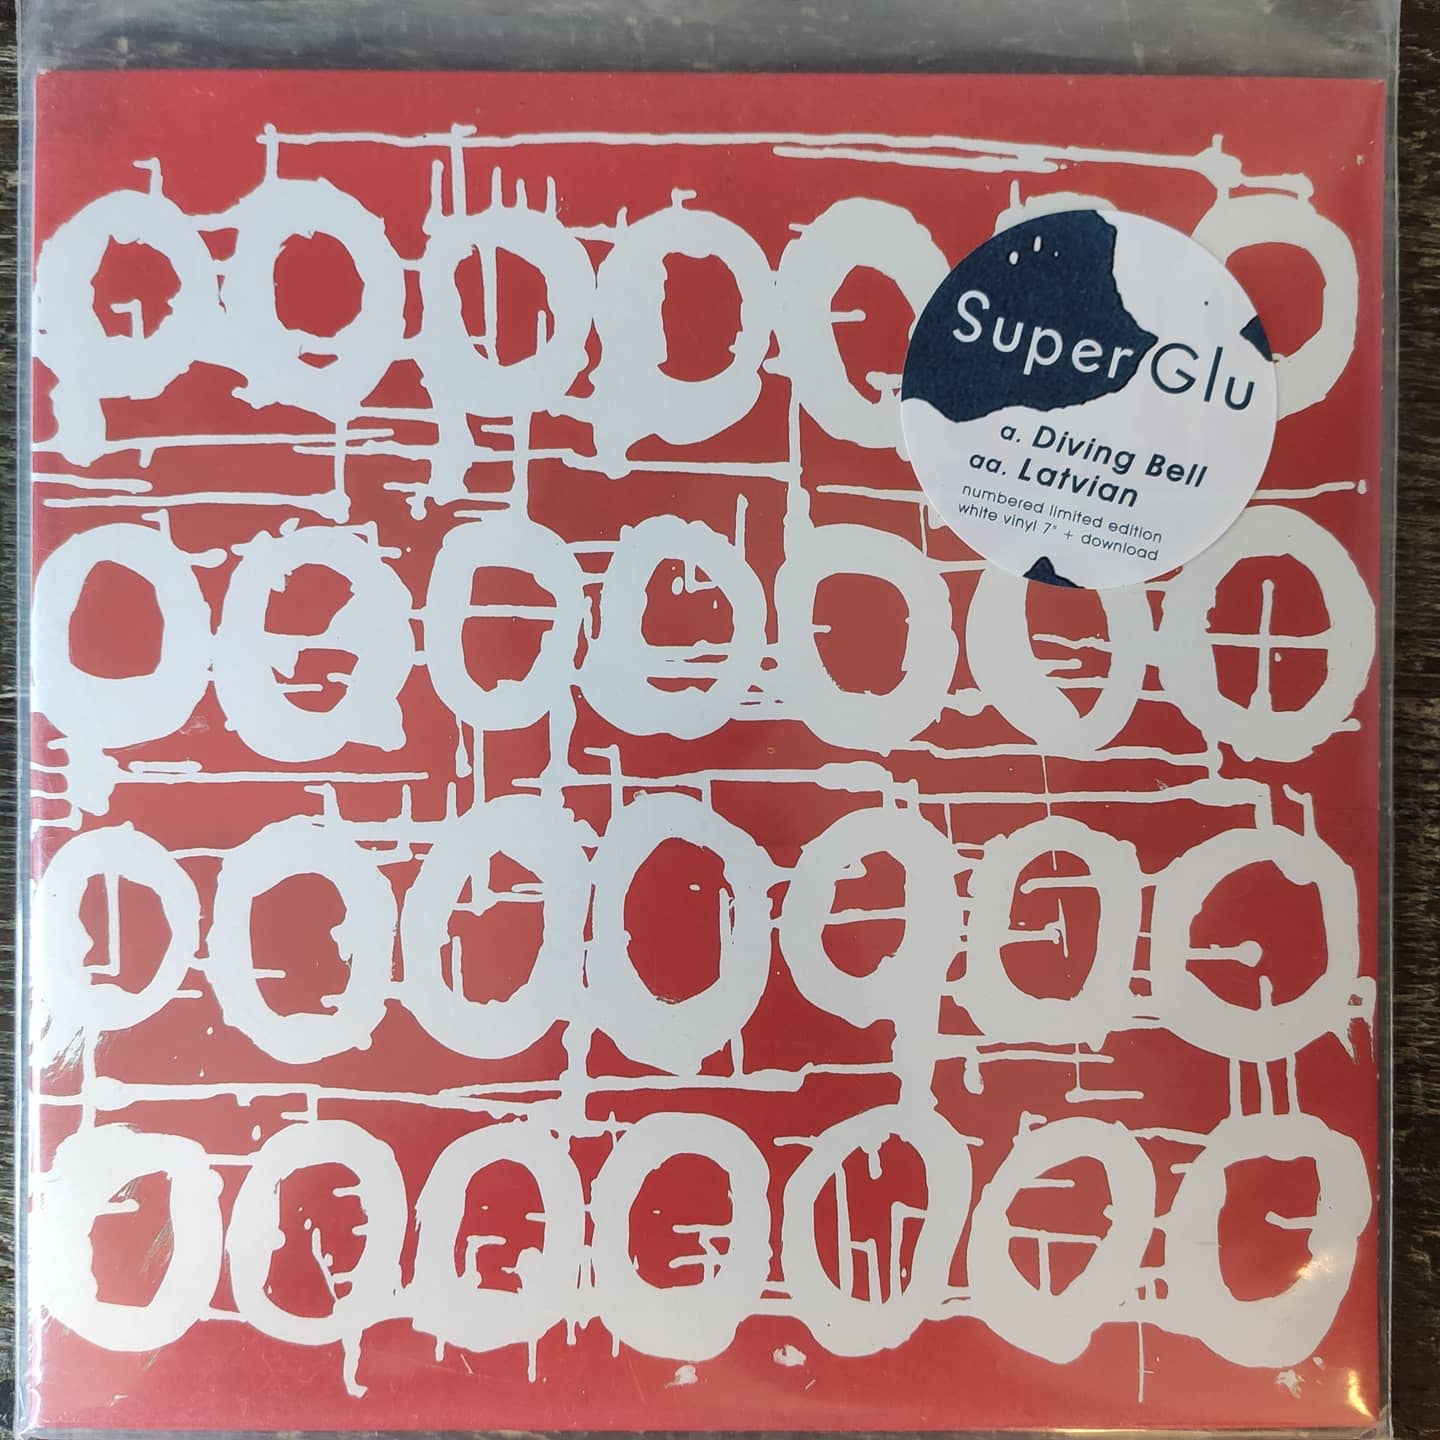 SuperGlu - Diving Bell (White Vinyl 7")